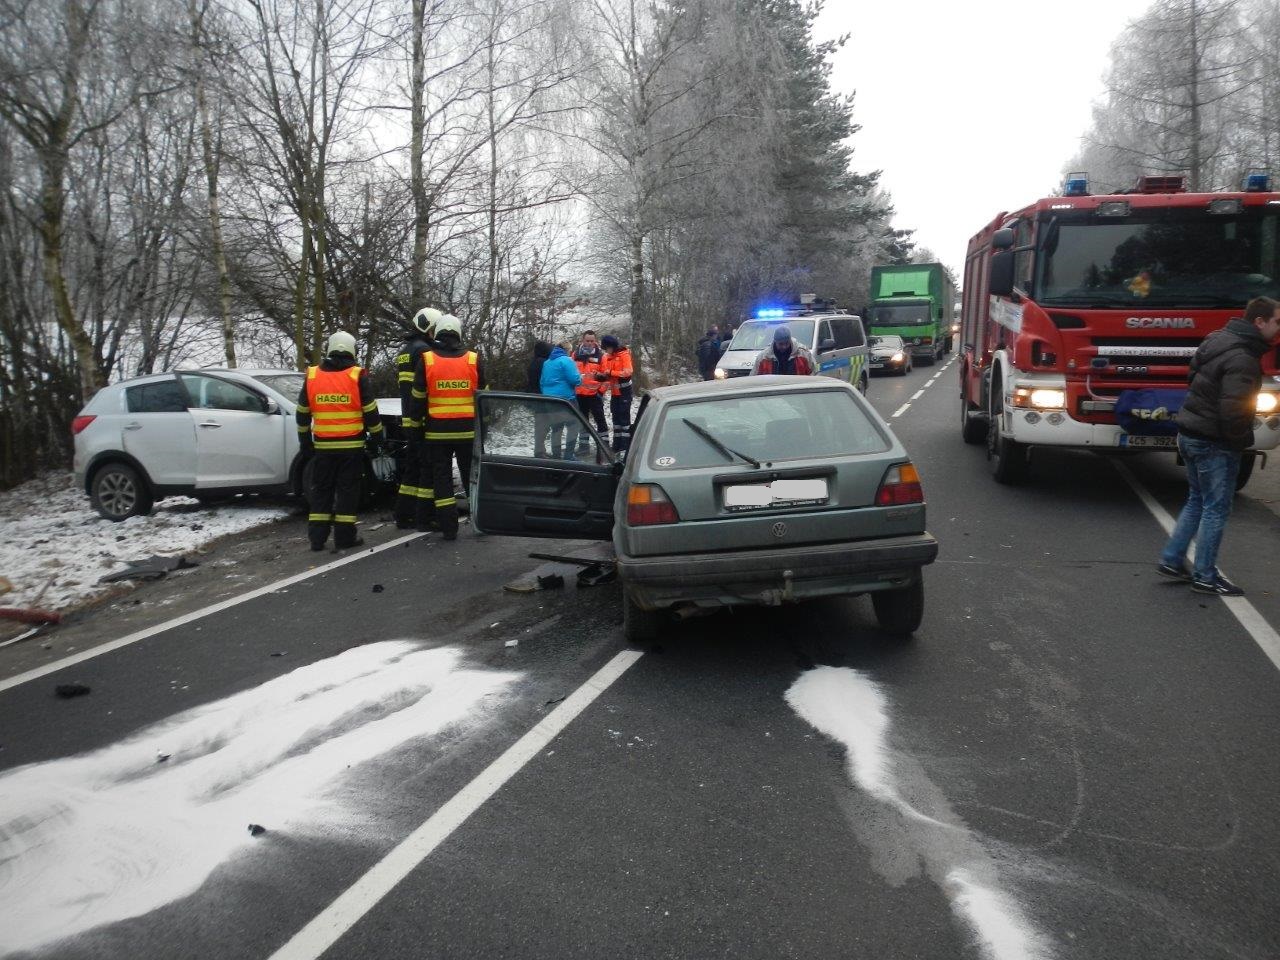 Dopravní nehoda 2 OA, Vitějovice - 6. 12. 2016 (3).jpg